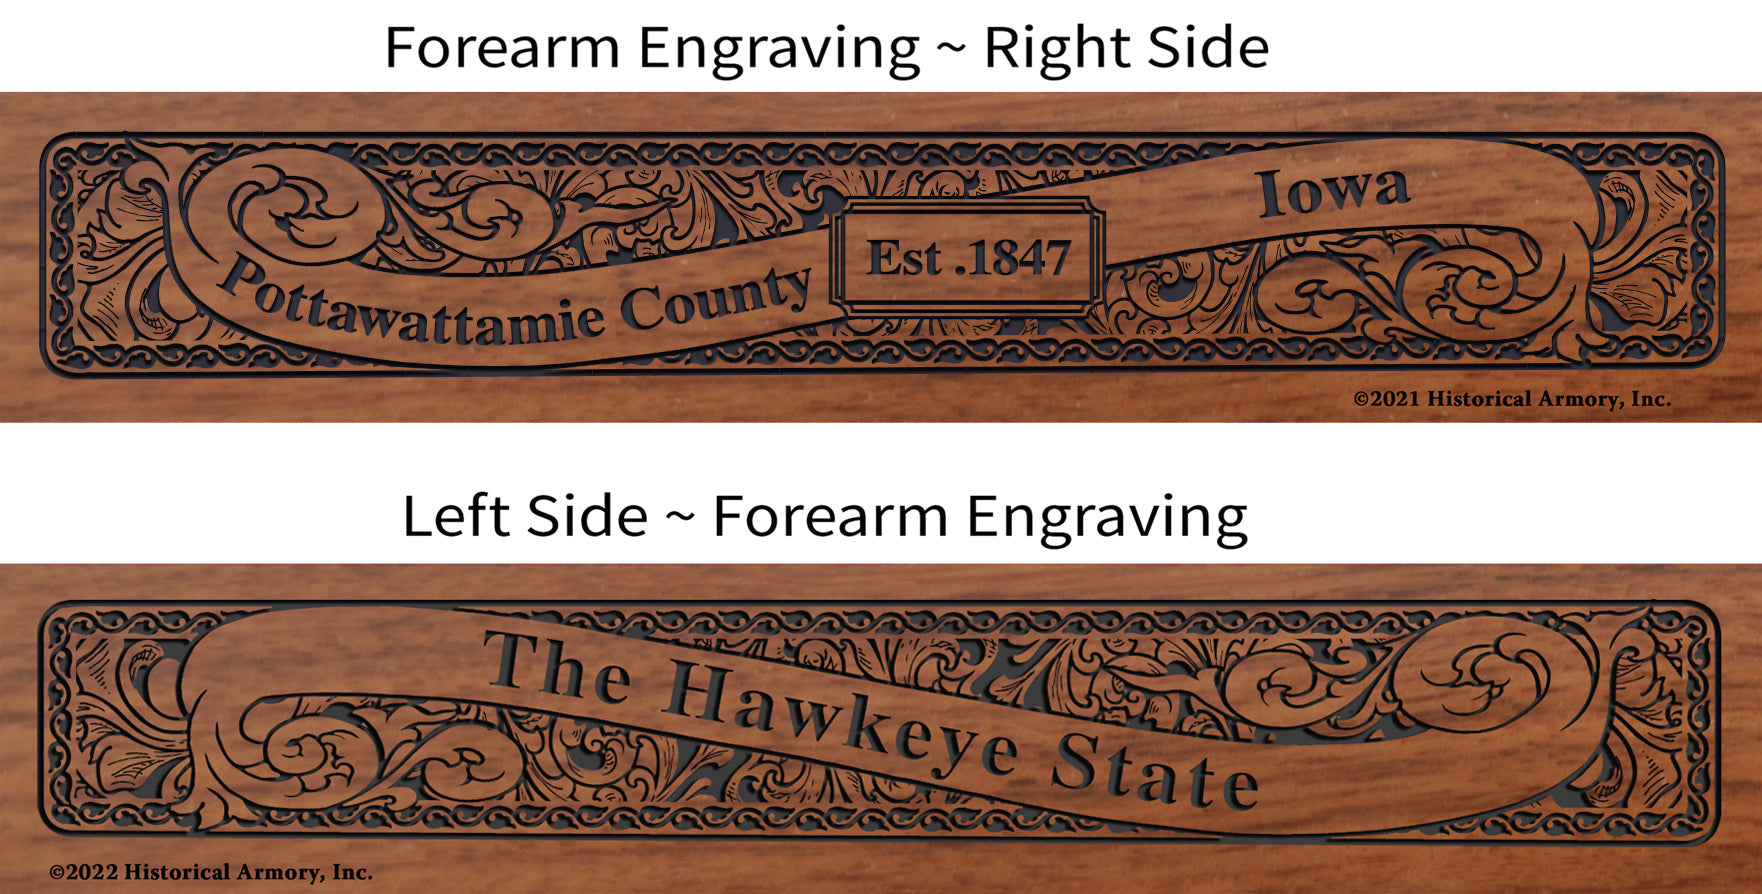 Pottawattamie County Iowa Engraved Rifle Forearm